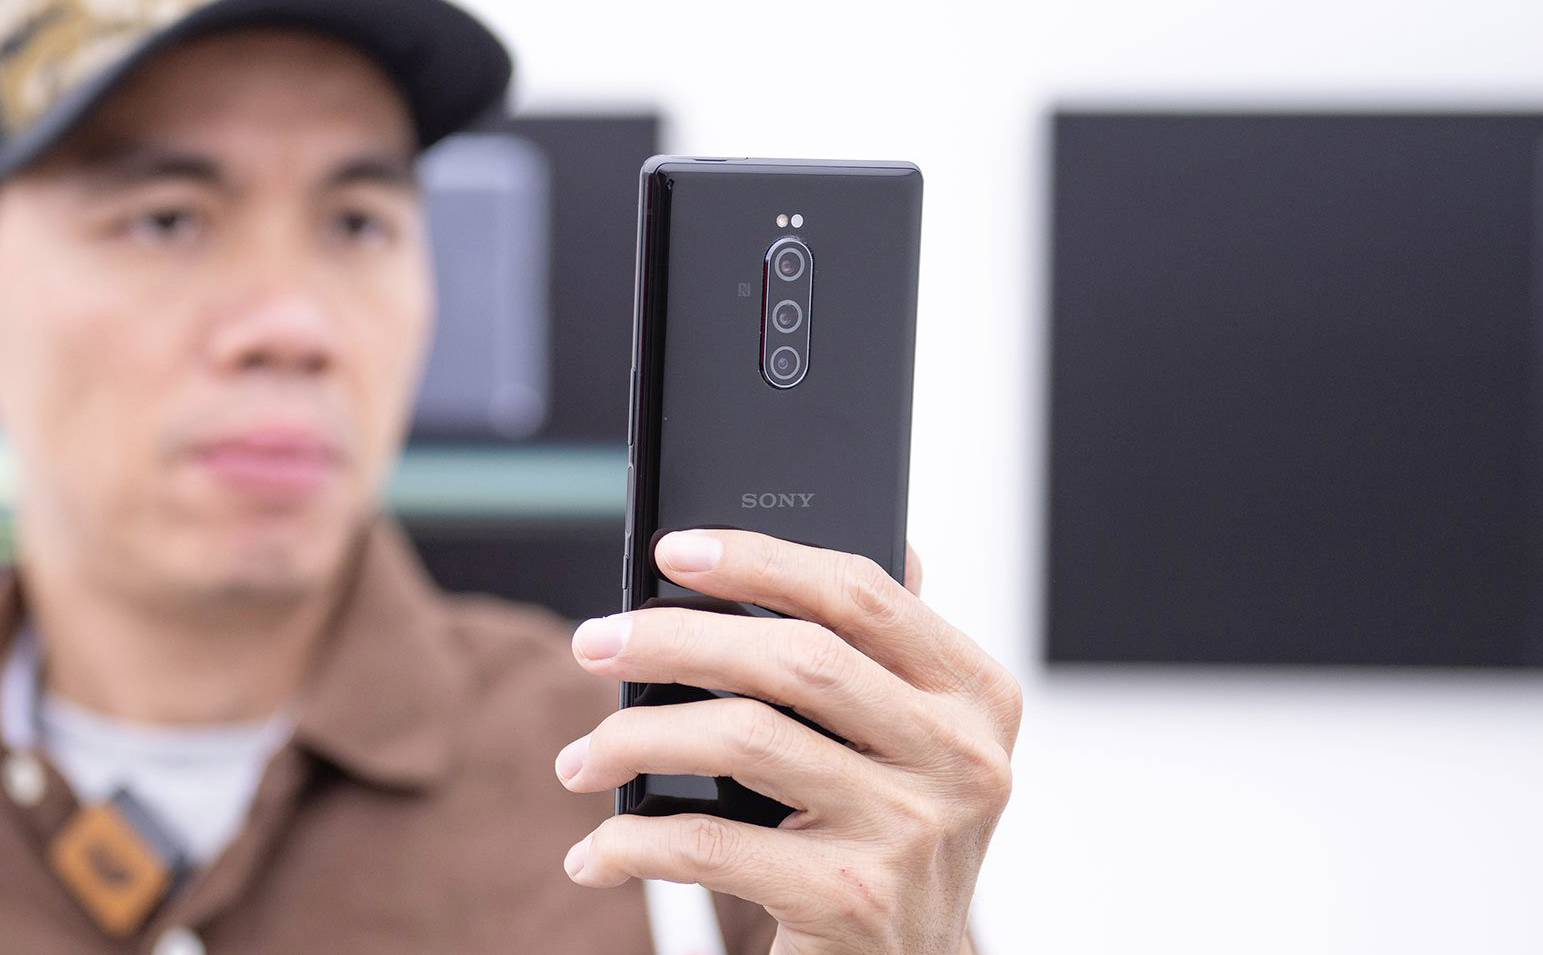 Vì sao camera của điện thoại Sony Xperia không tốt như kỳ vọng?